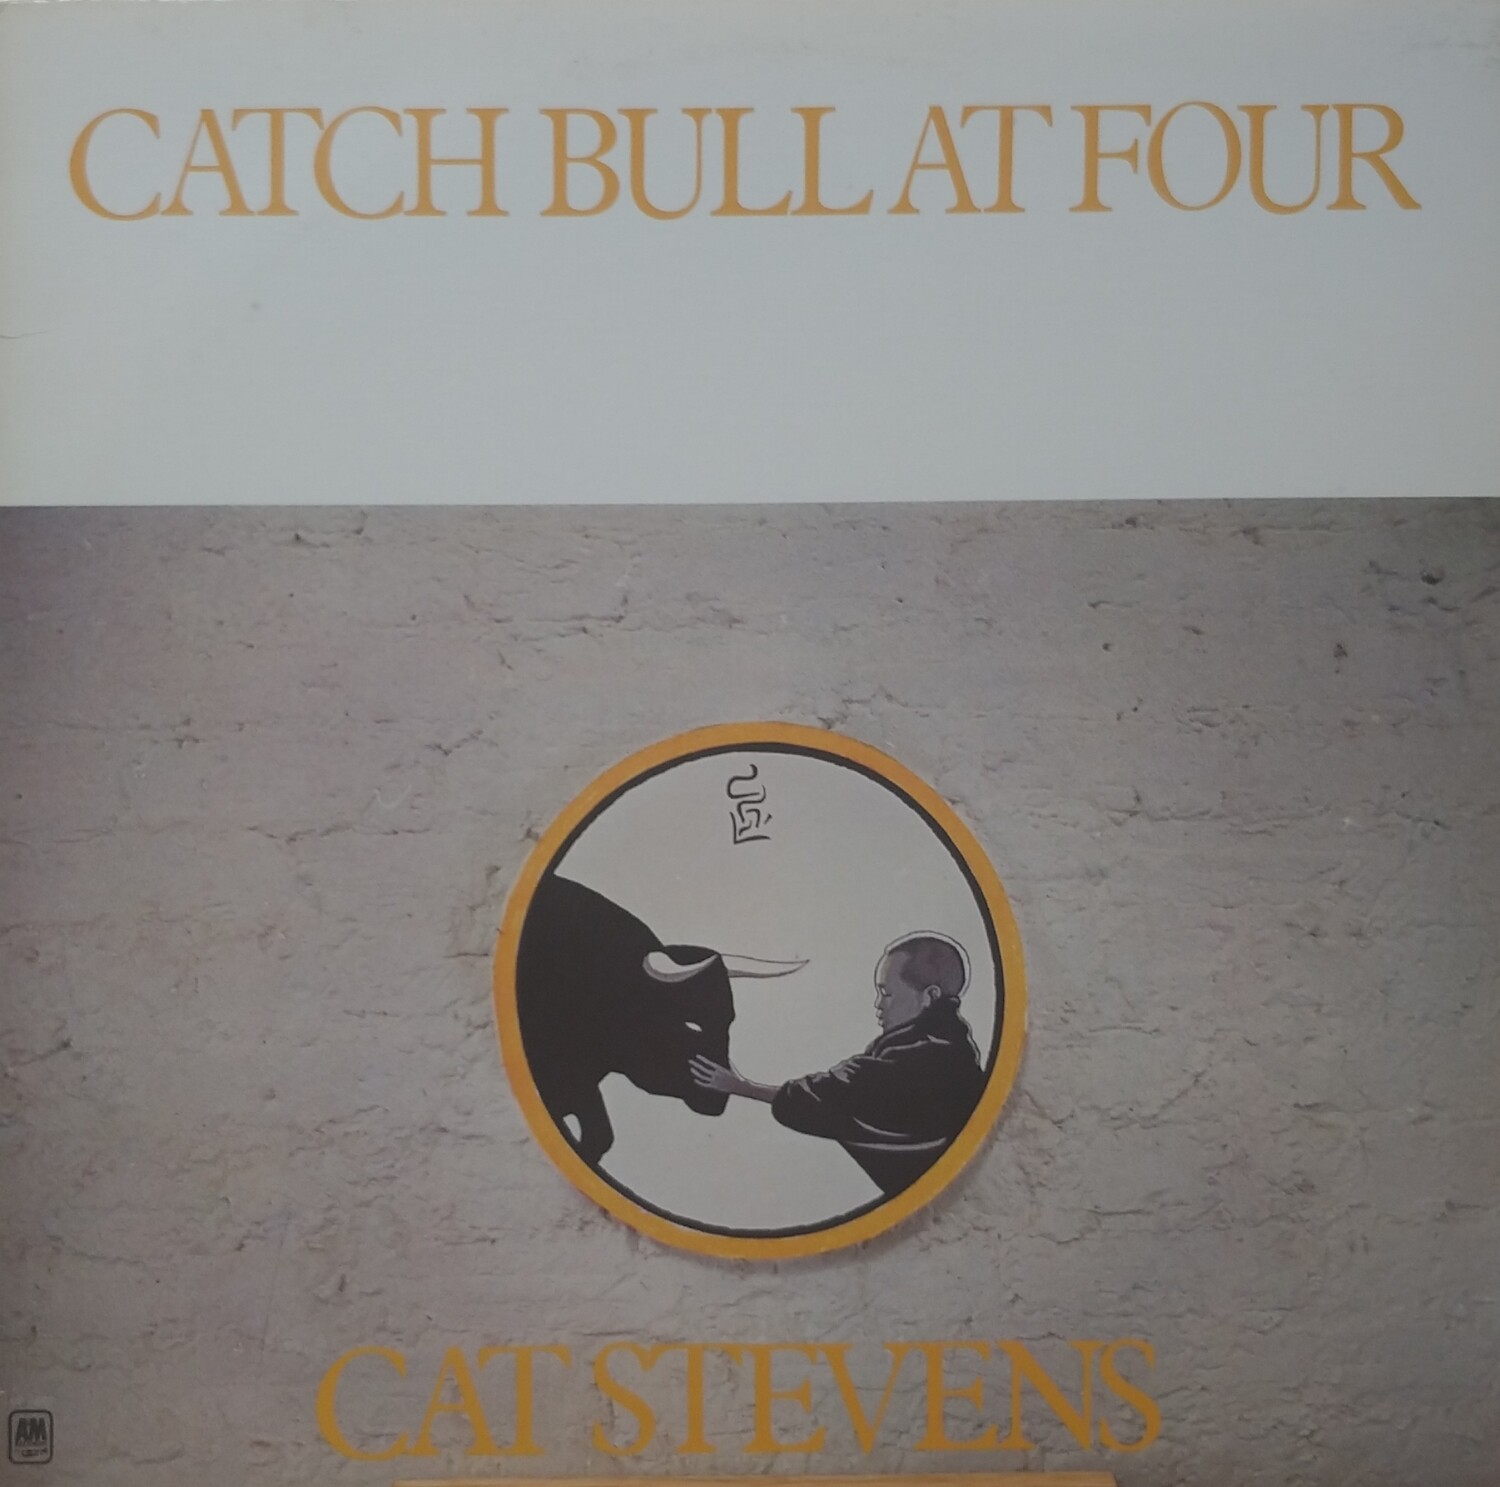 Cat Stevens - Catch Bull at four